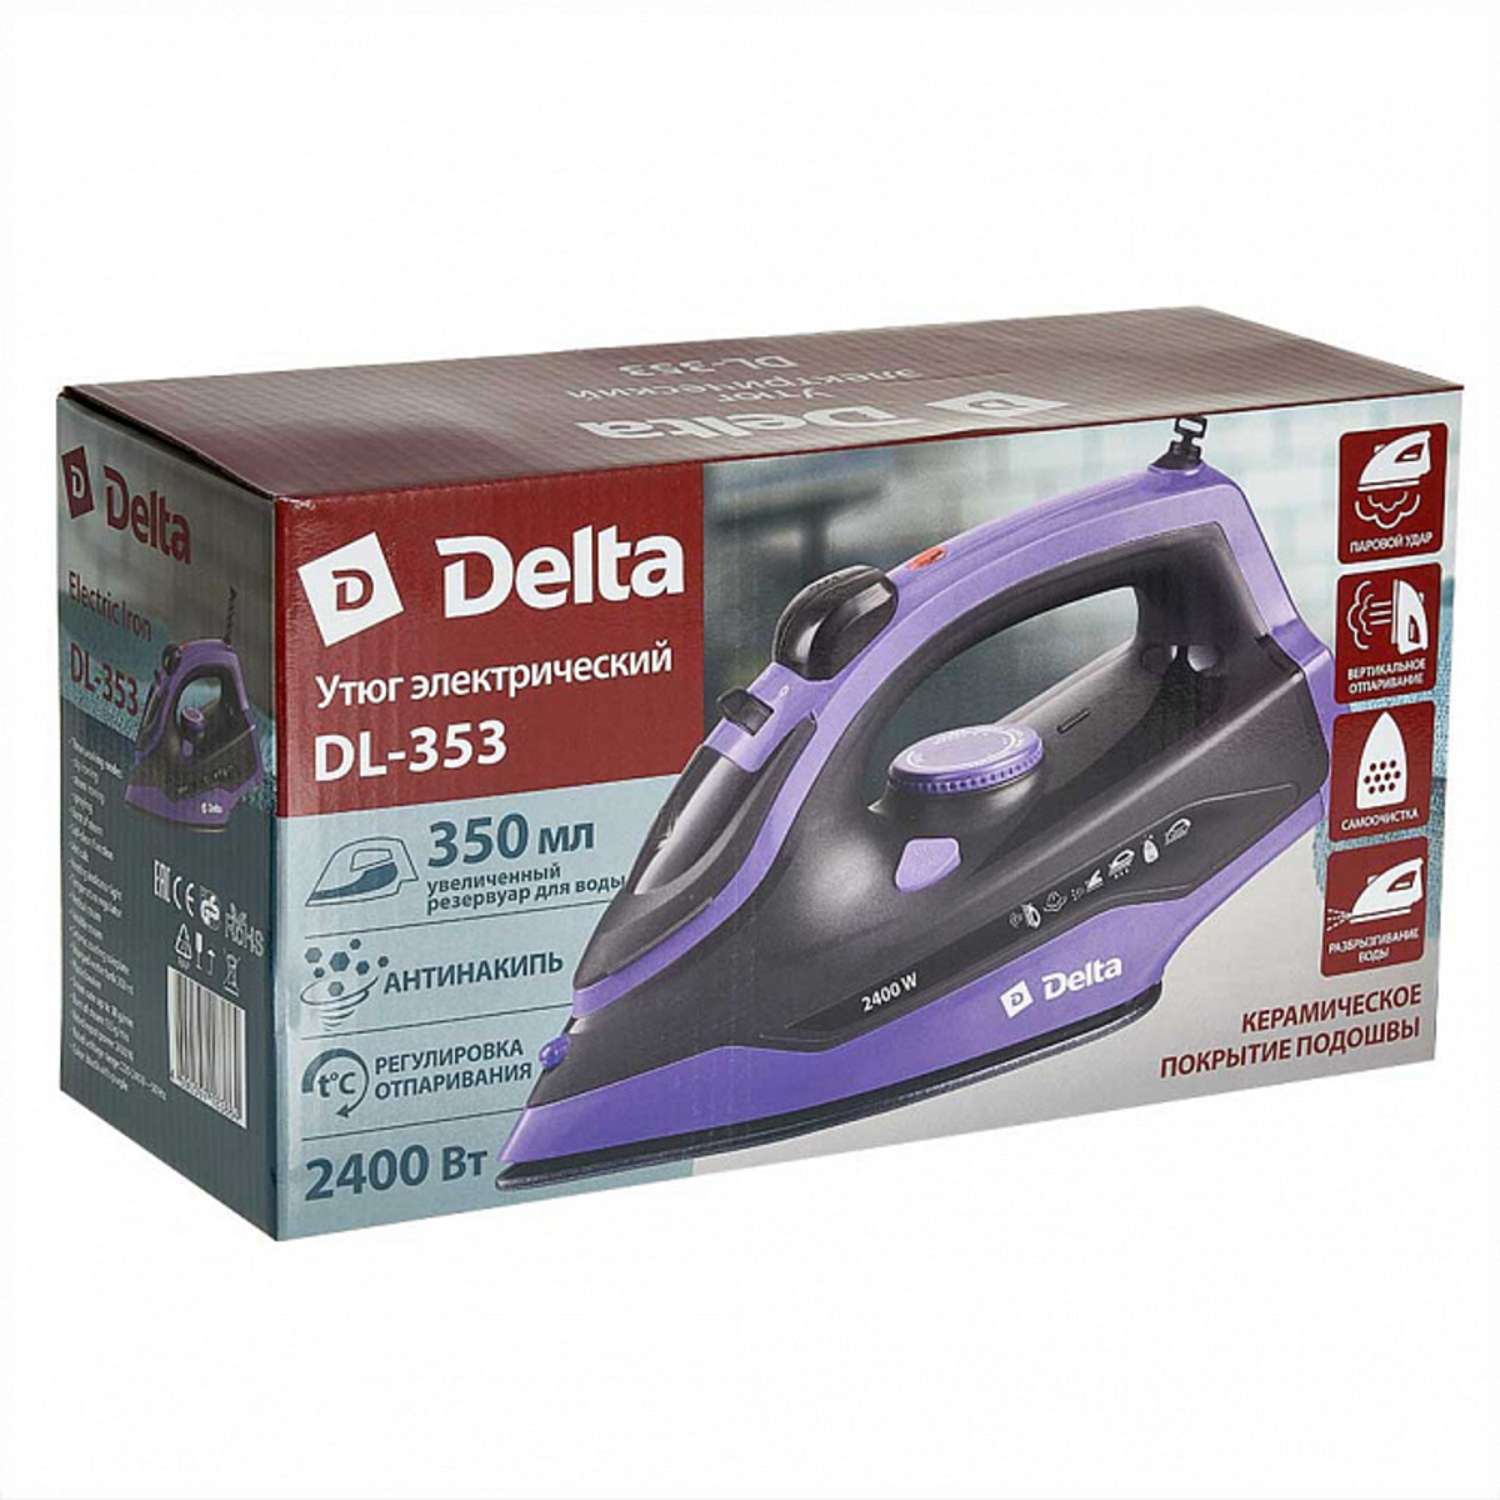 Утюг Delta DL-353 черный с фиолетовым 2400 Вт керамика антинакипь самоочистка - фото 6